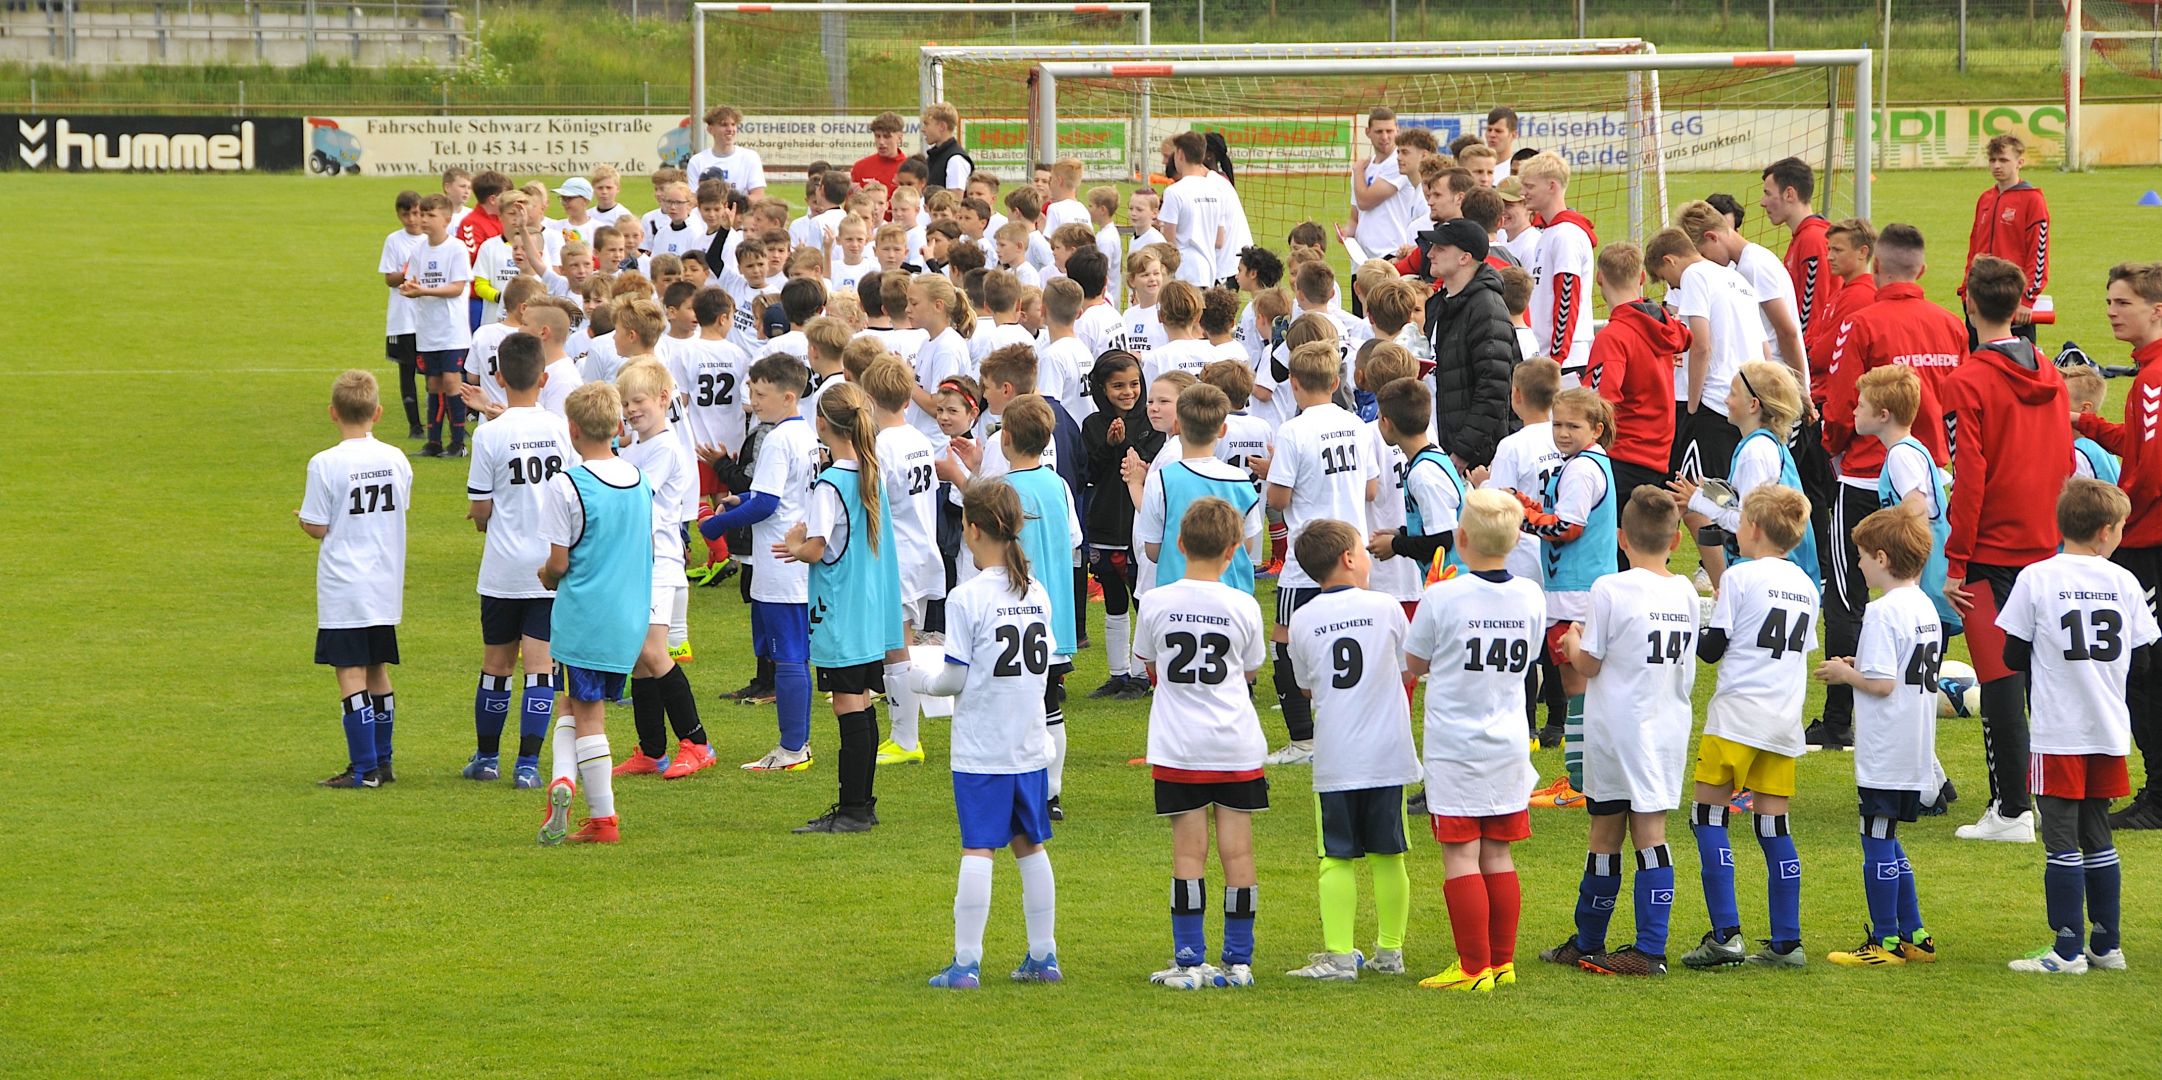 Viel Spaß und Talent: SV Eichede und HSV feiern Rückkehr des Young-Talents-Days